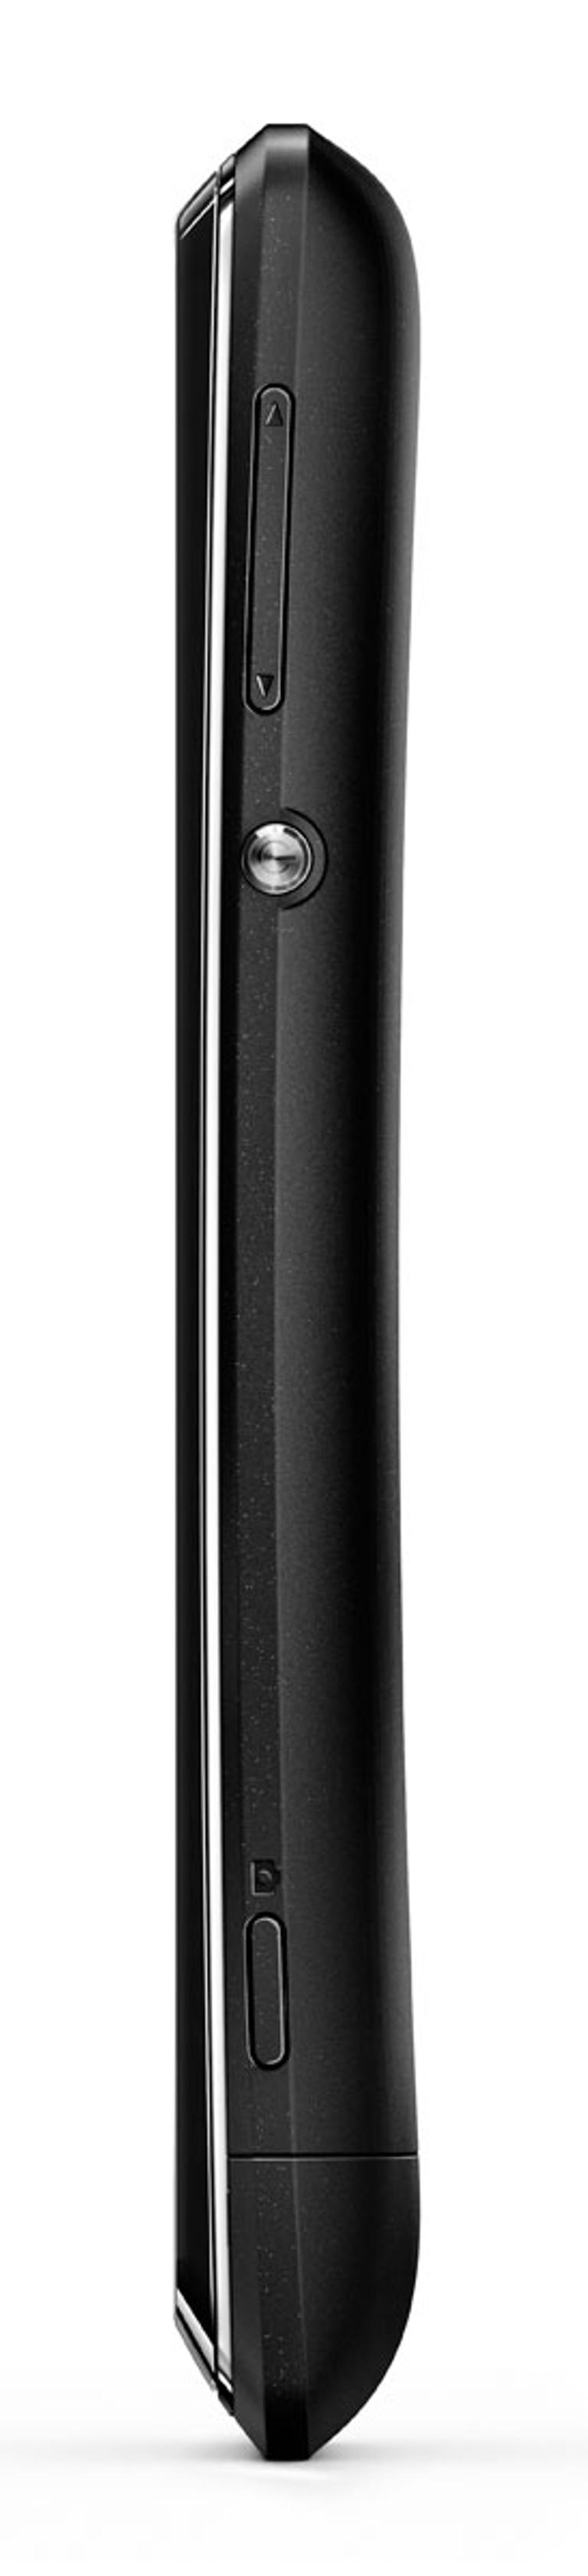 Sony Xperia E negro vista lateral